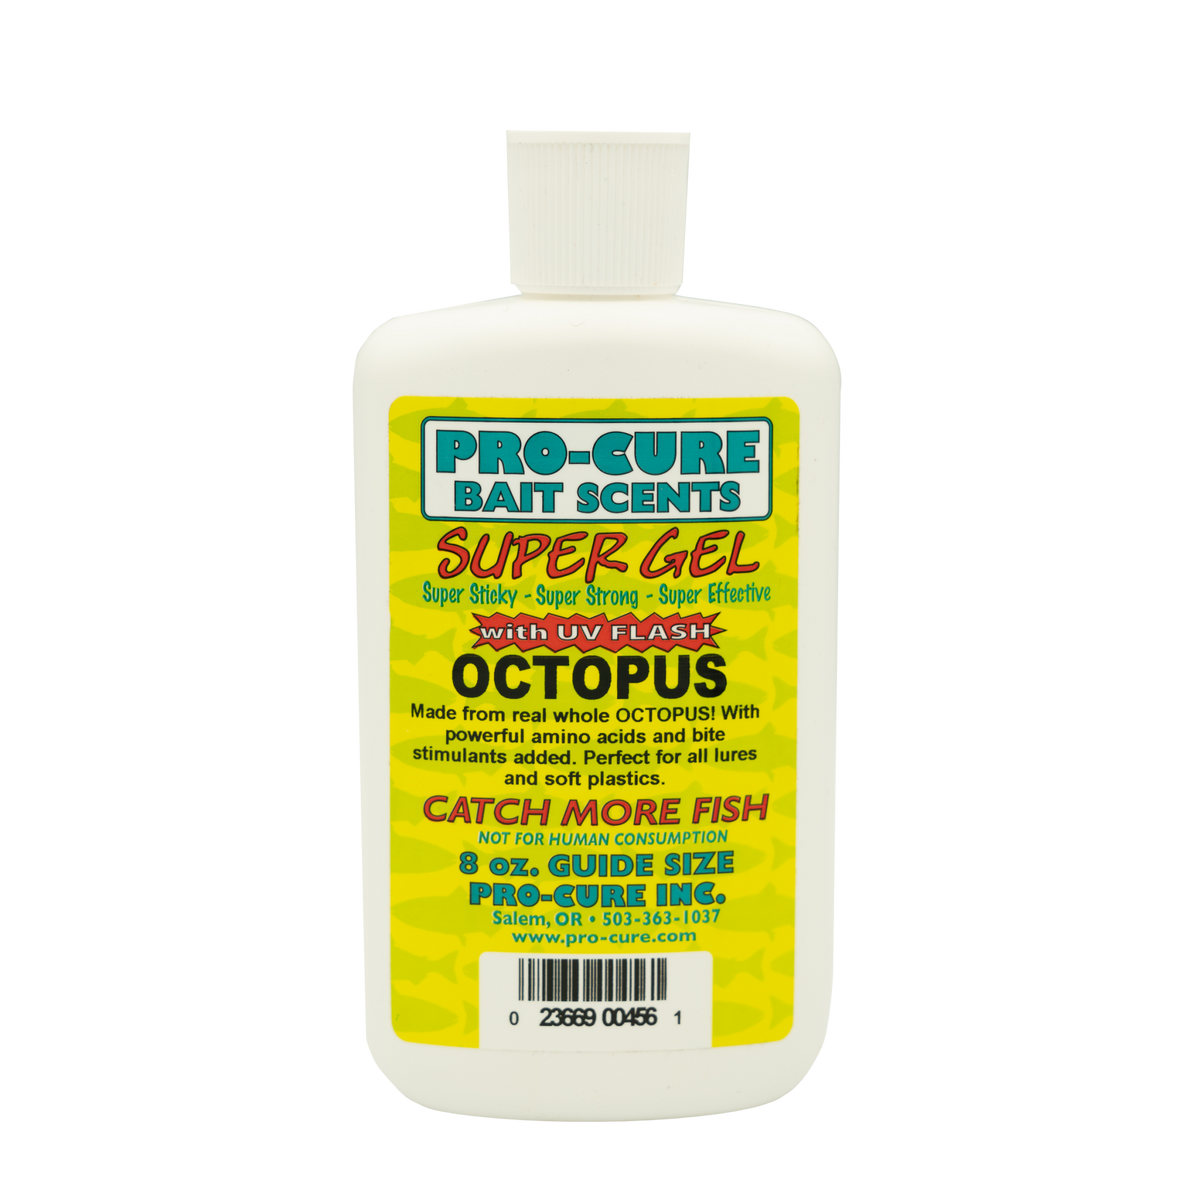 OCTOPUS SUPER GEL – Pro-Cure, Inc